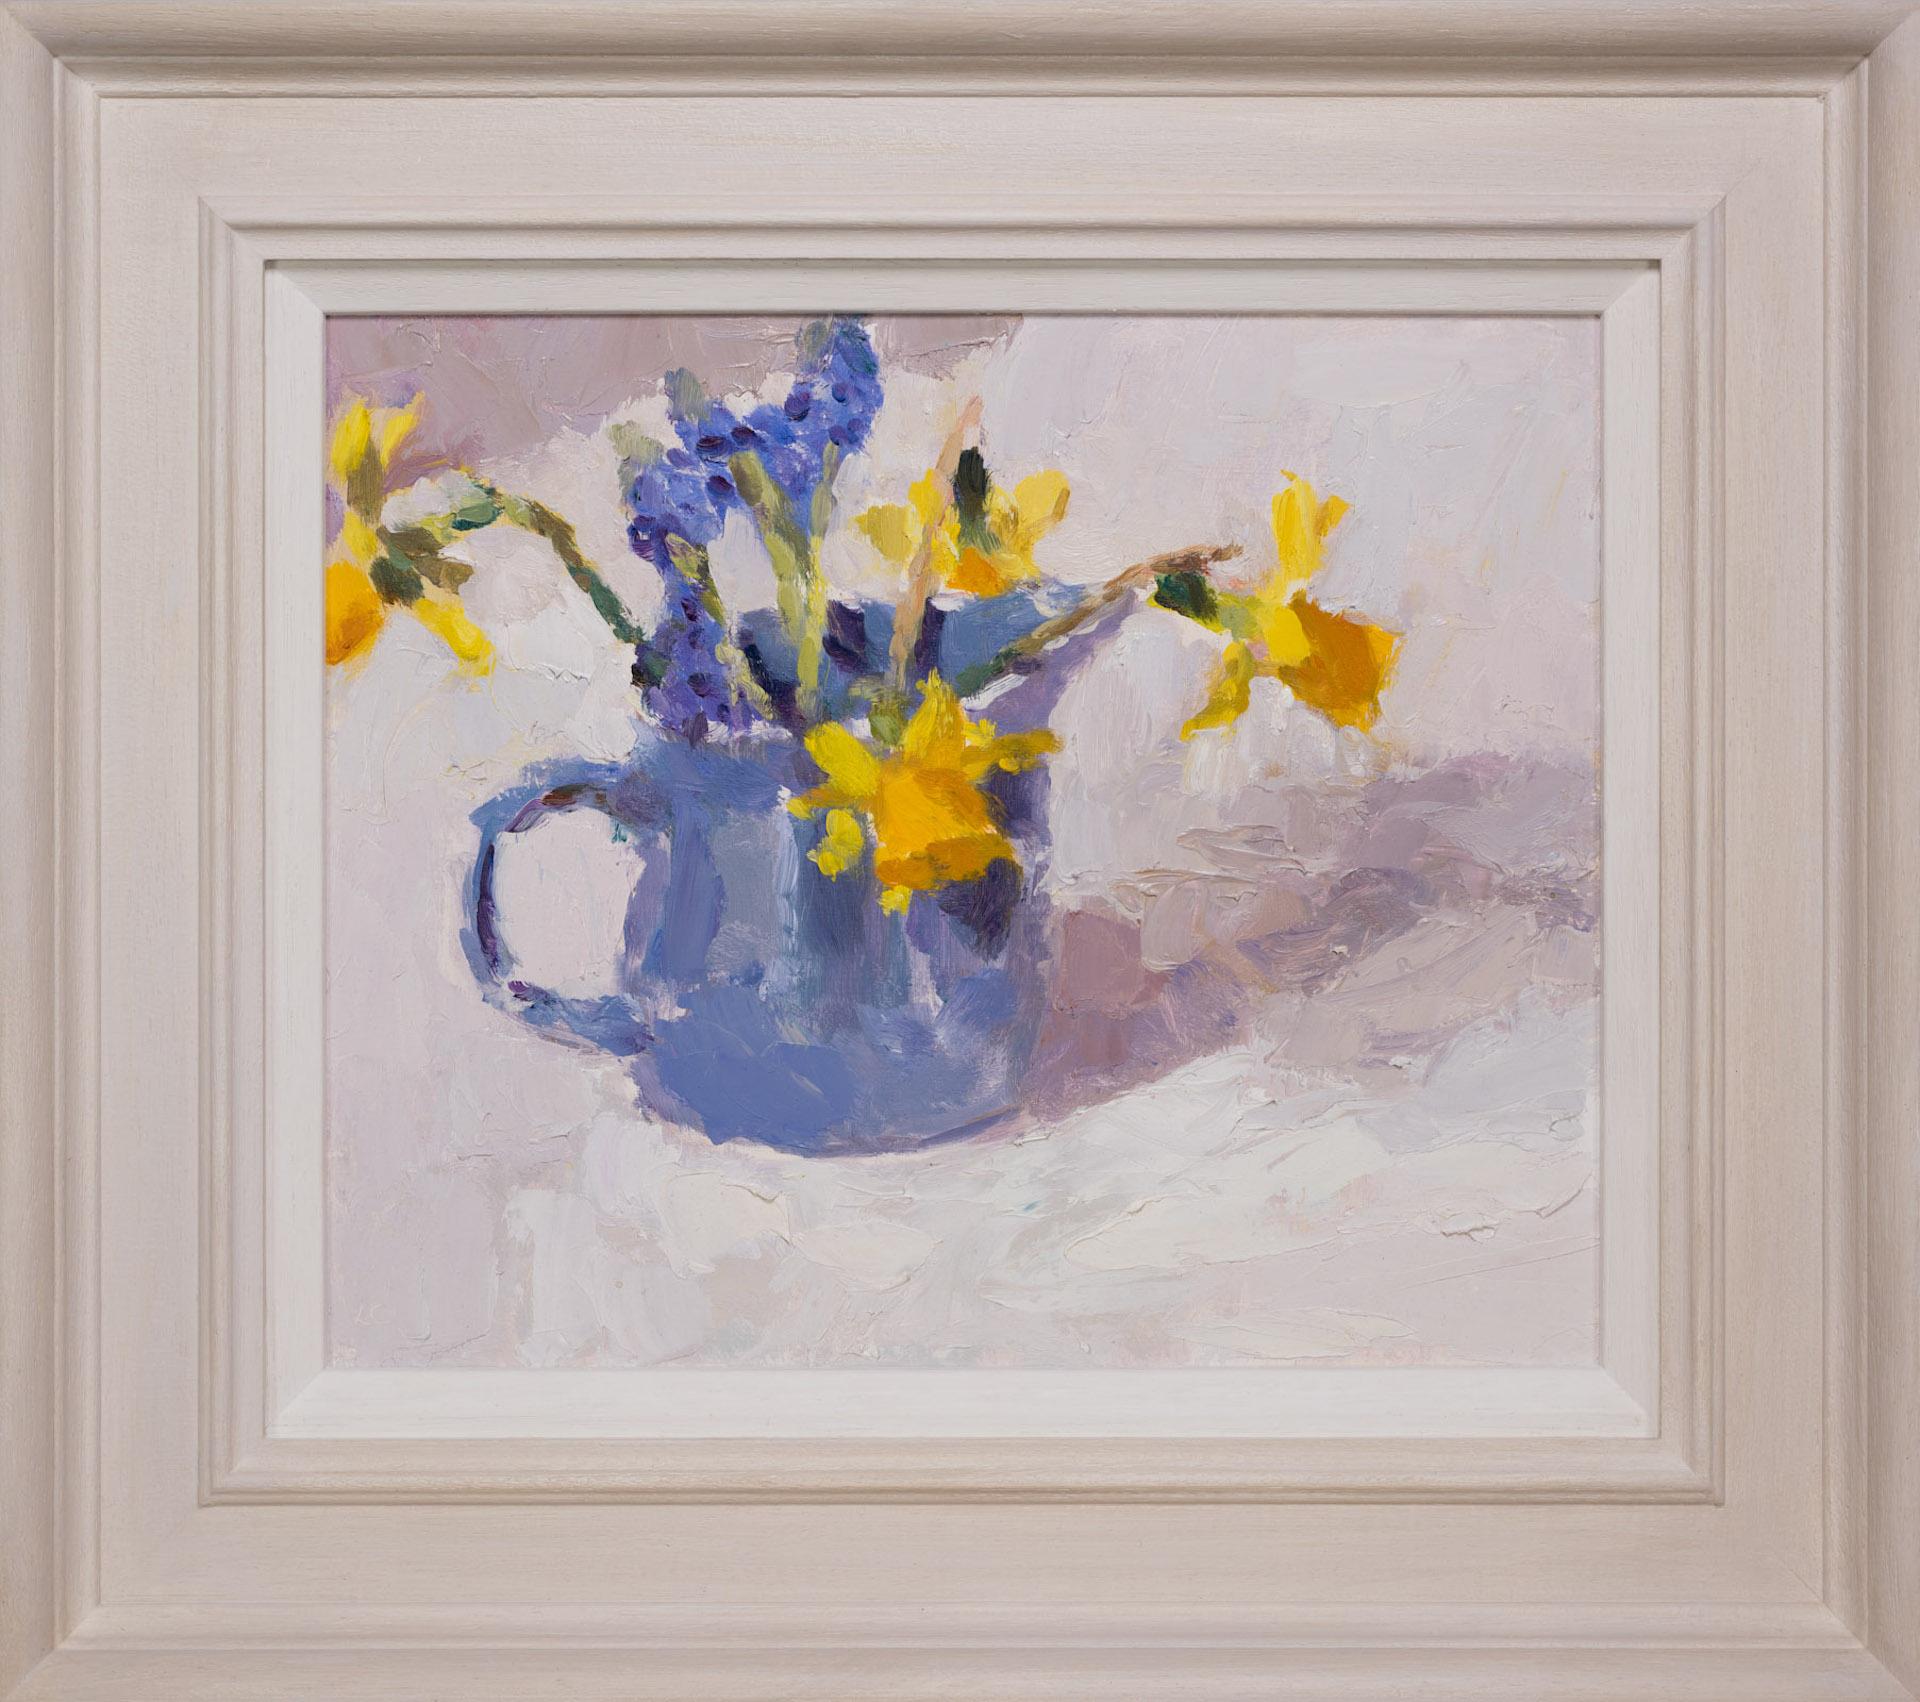 Grape Hyacinths and Daffodils in a Blue Jug BY LYNNE CARTLIDGE, Original Art - Painting by Lynne Cartlidge